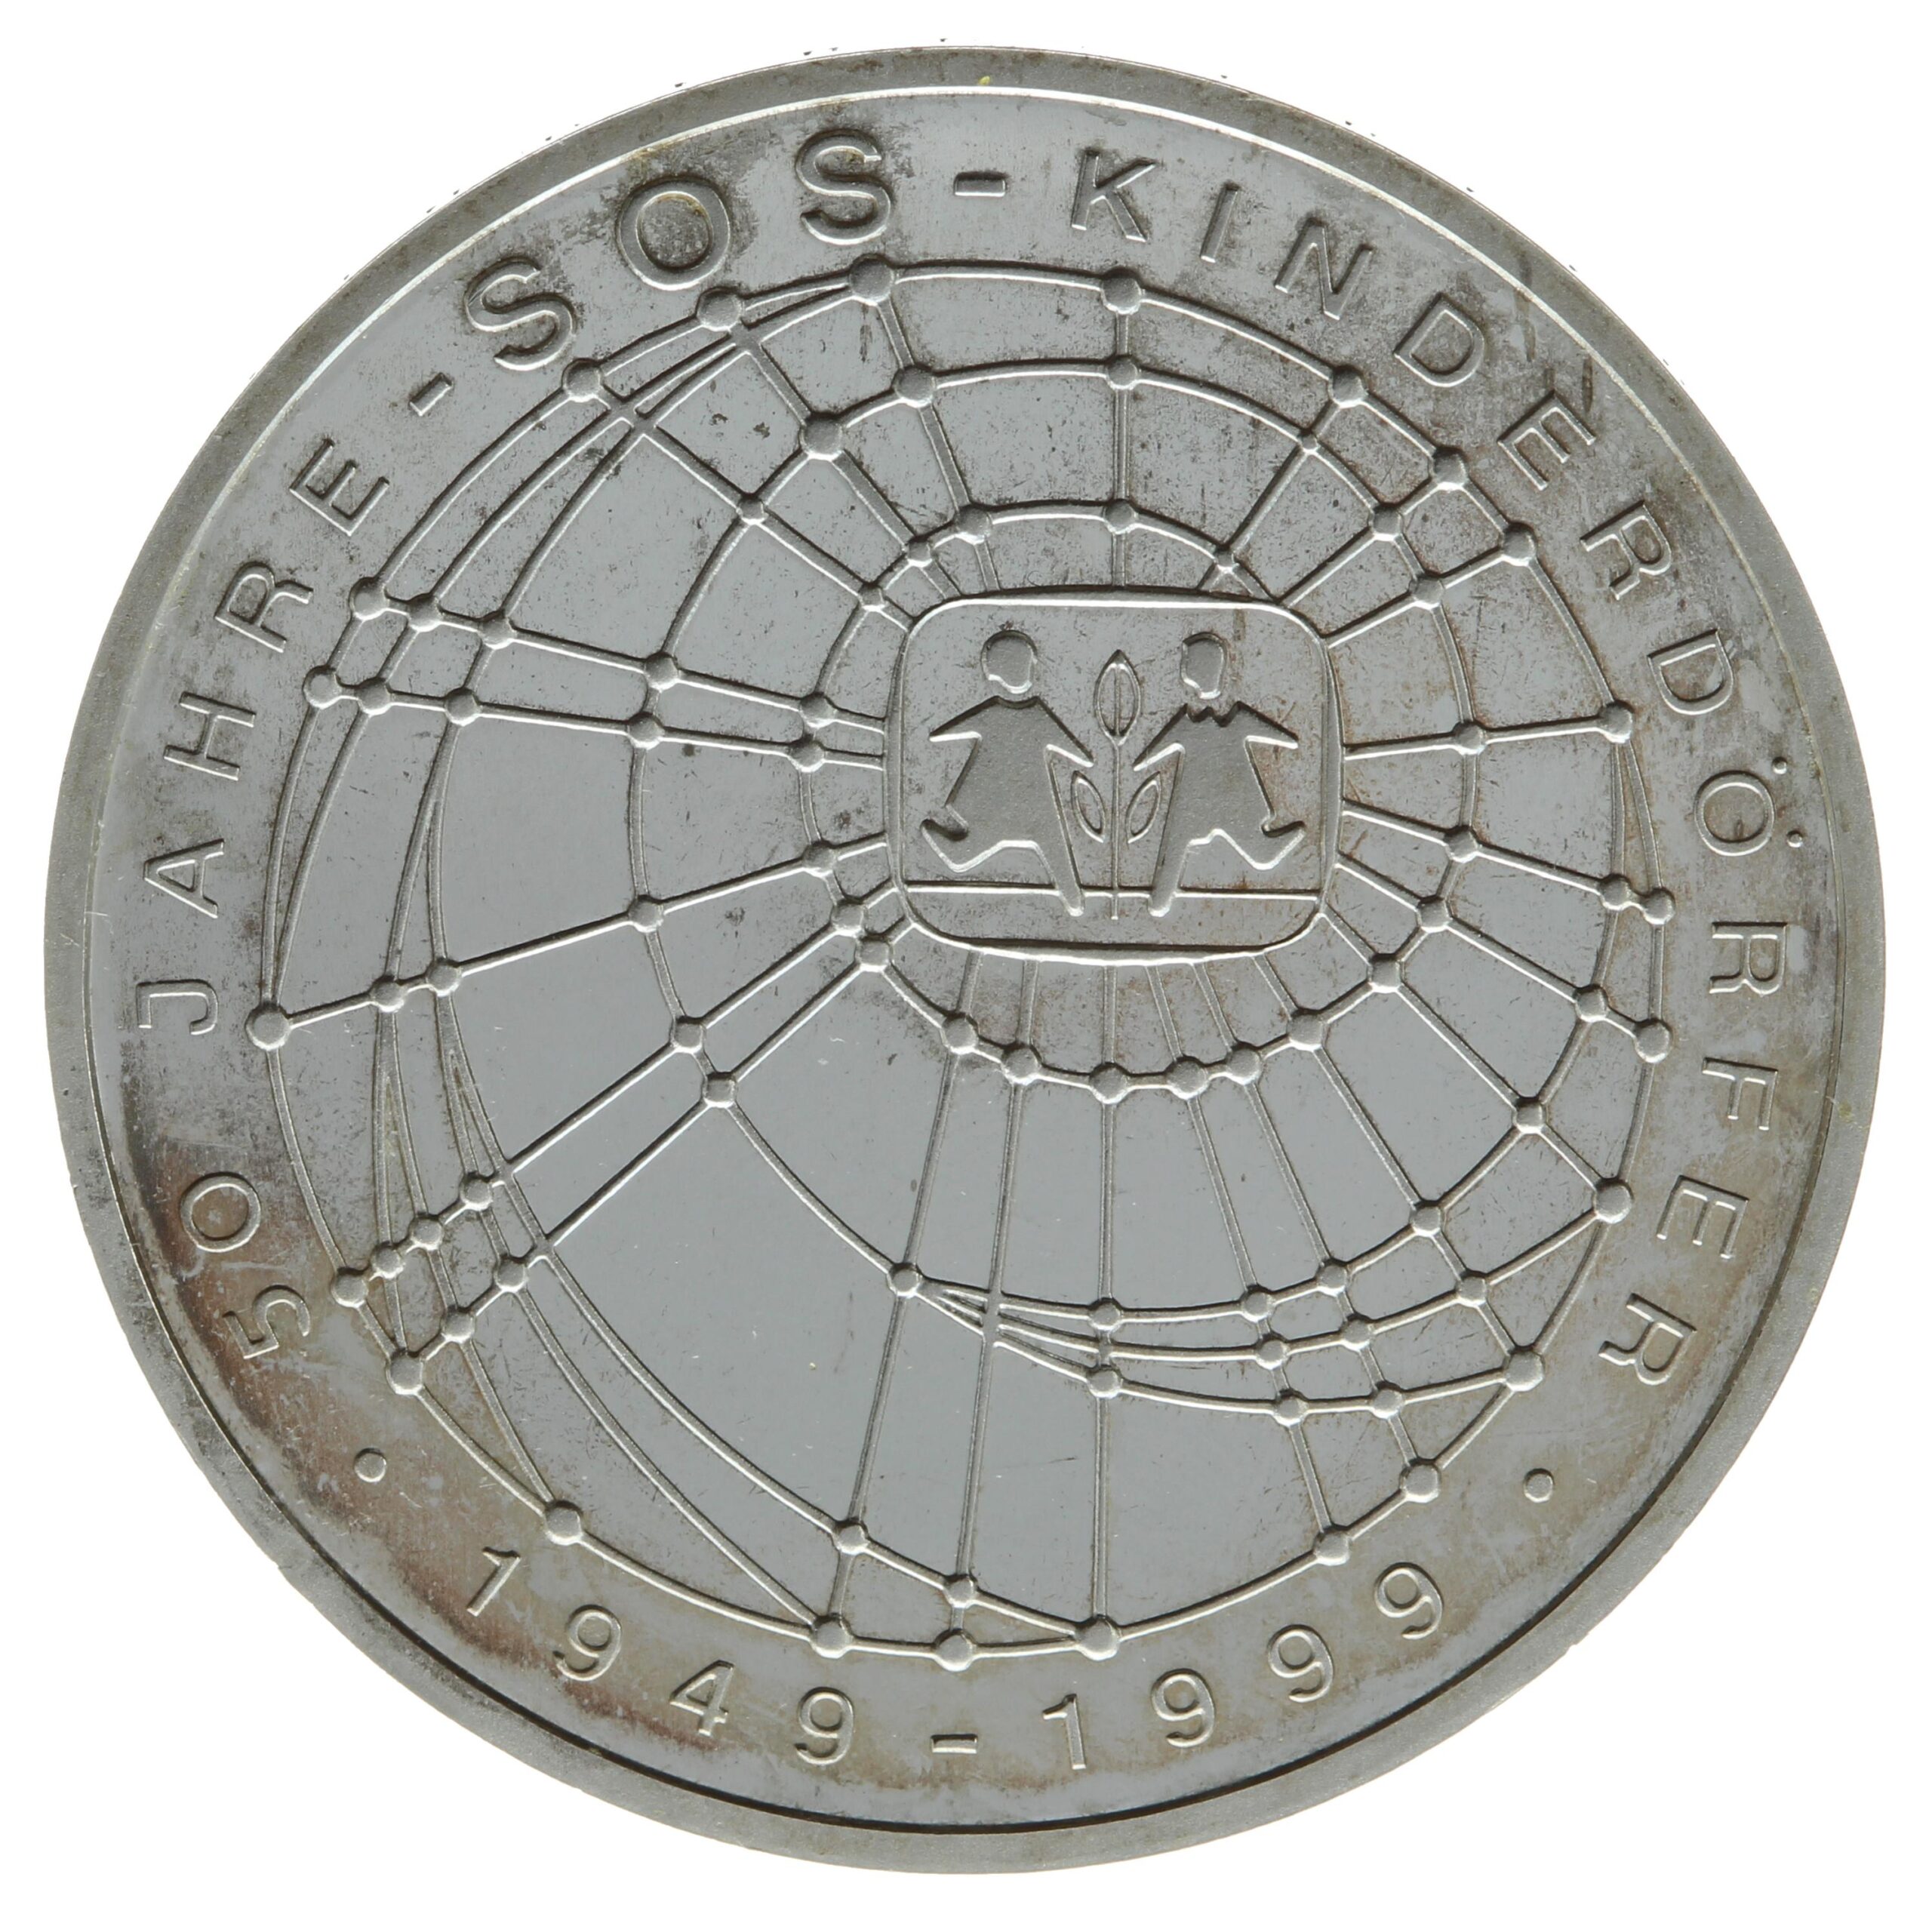 DE 10 Deutsche Mark 1999 G